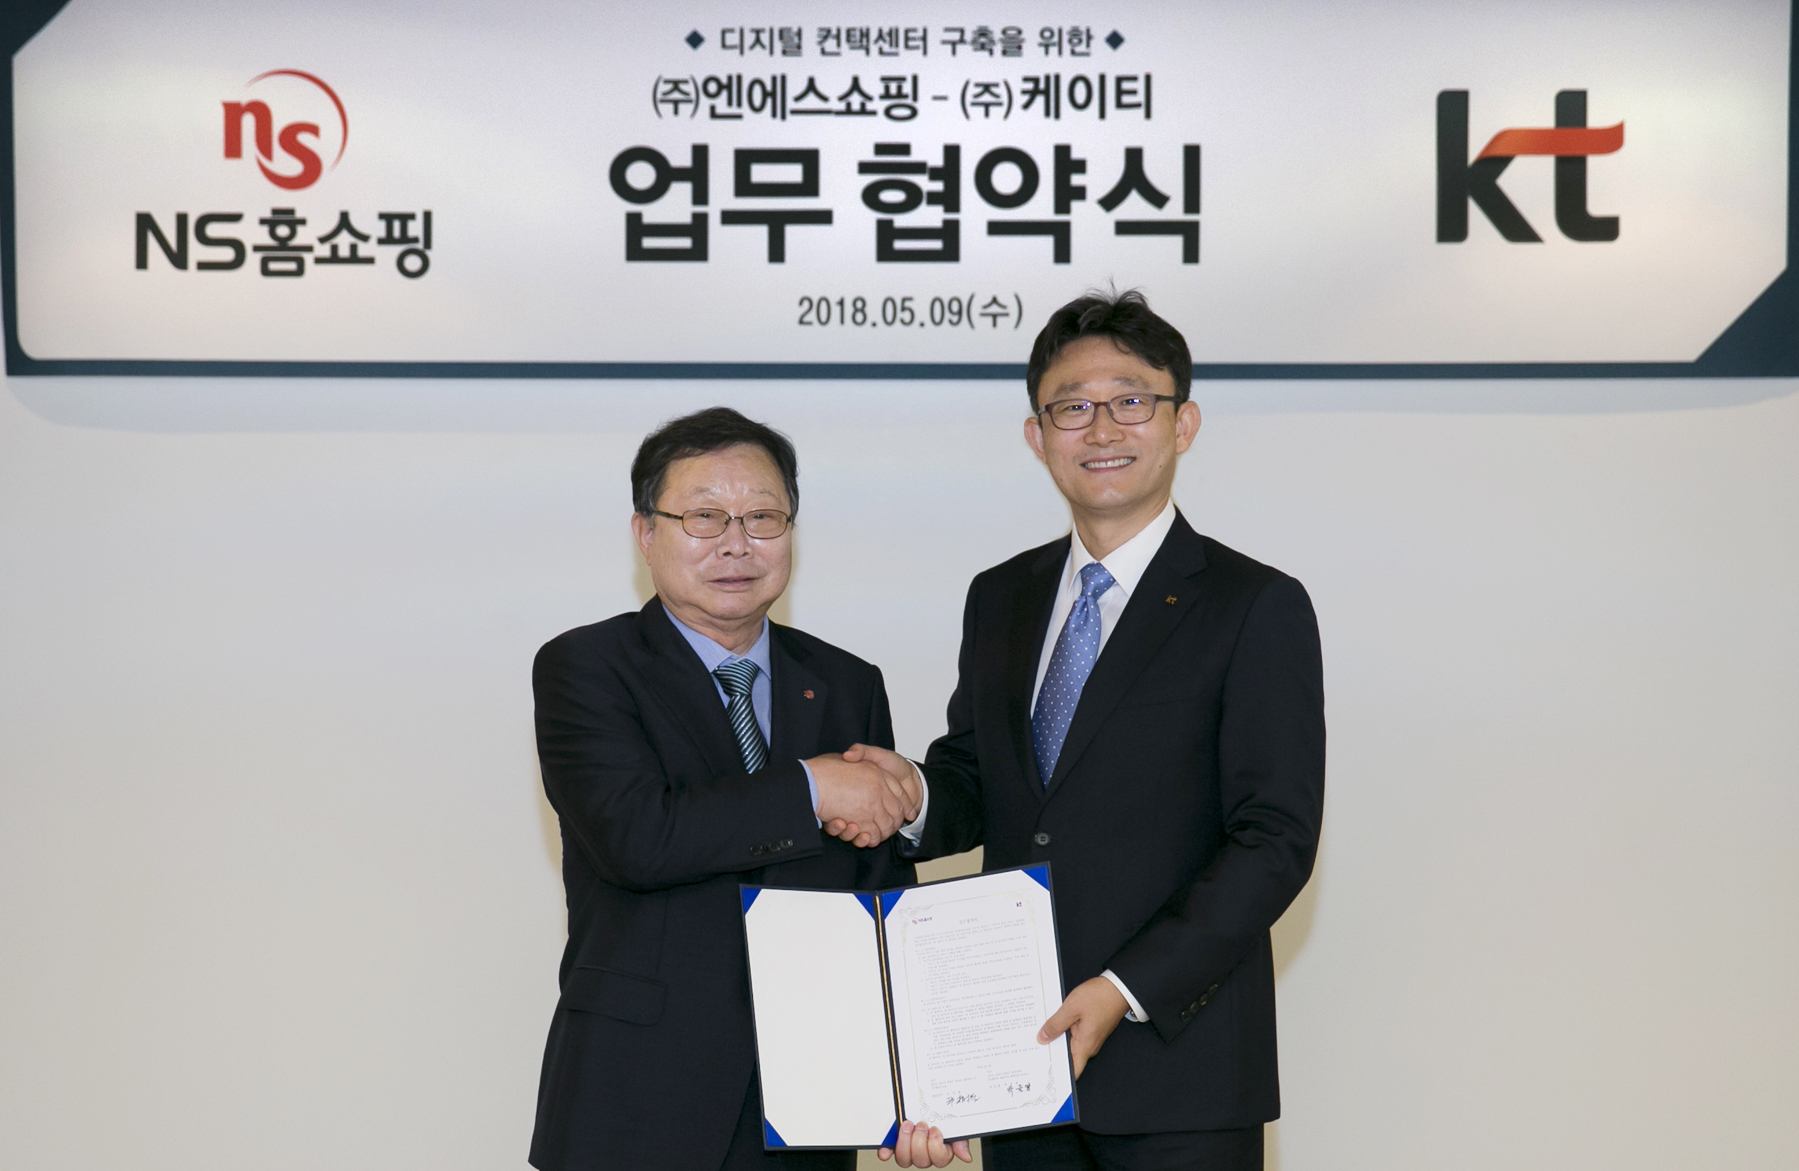 ▲ 도상철 NS홈쇼핑 총괄사장과 박윤영 KT 기업사업부문장(왼쪽부터)